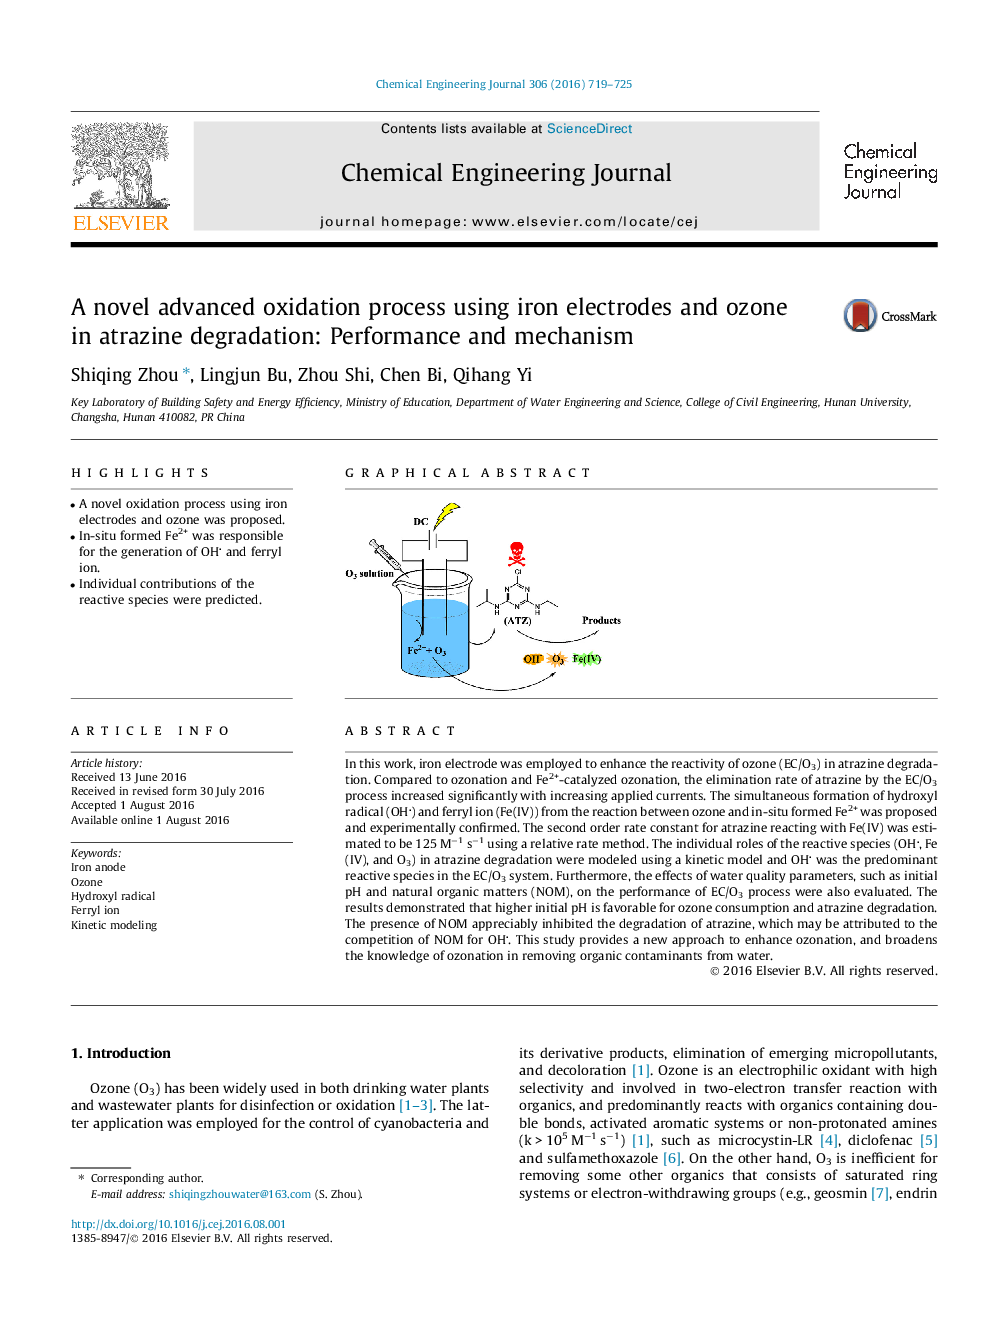 یک فرایند پیشرفته اکسیداسیون پیشرفته با استفاده از الکترودهای آهن و ازن در تجزیه آترازین: عملکرد و مکانیزم 